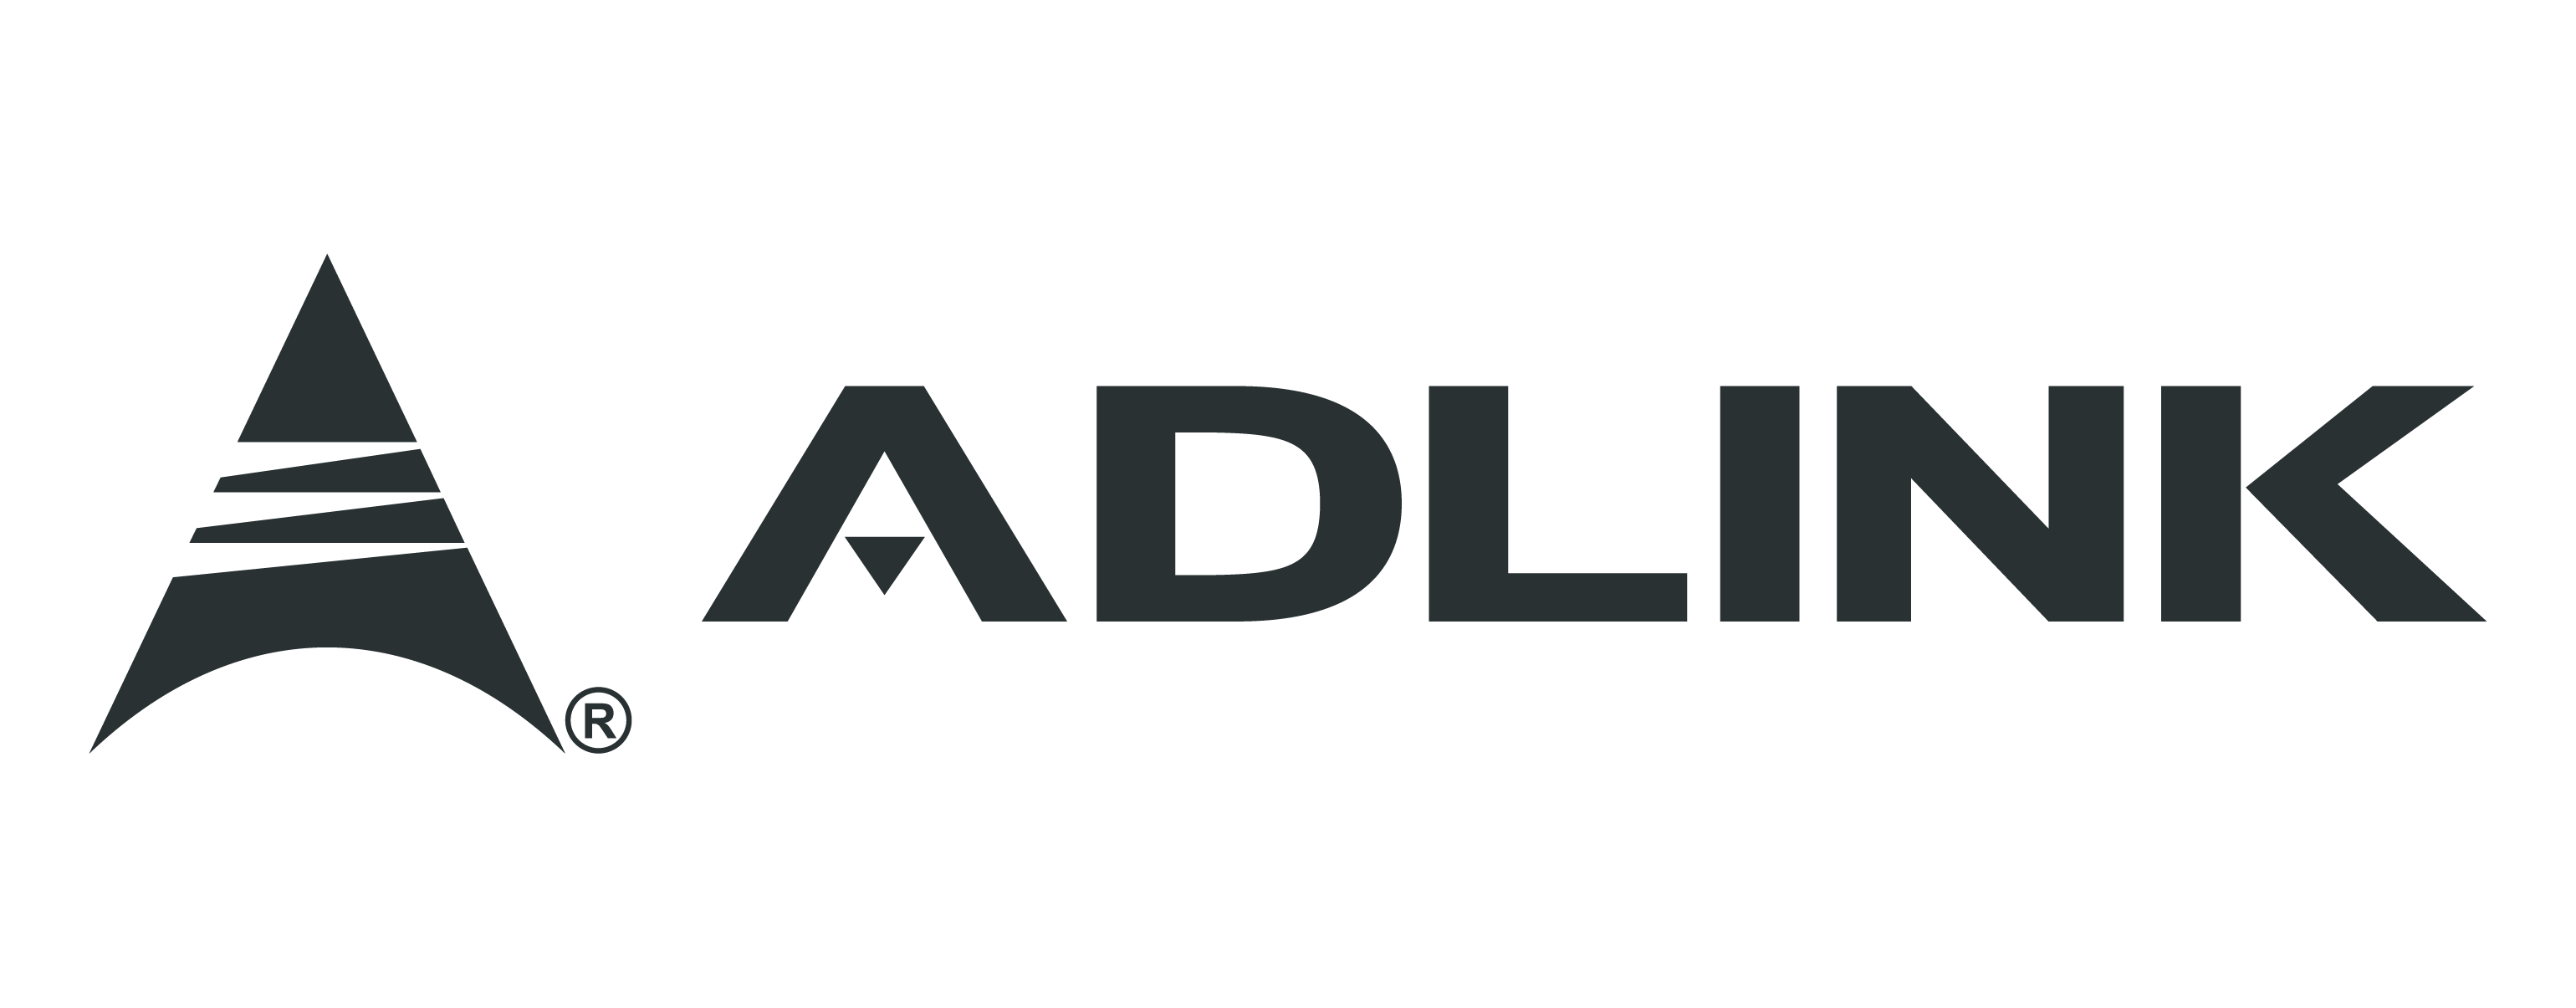 adlink-logo-large-idealworks-logistics